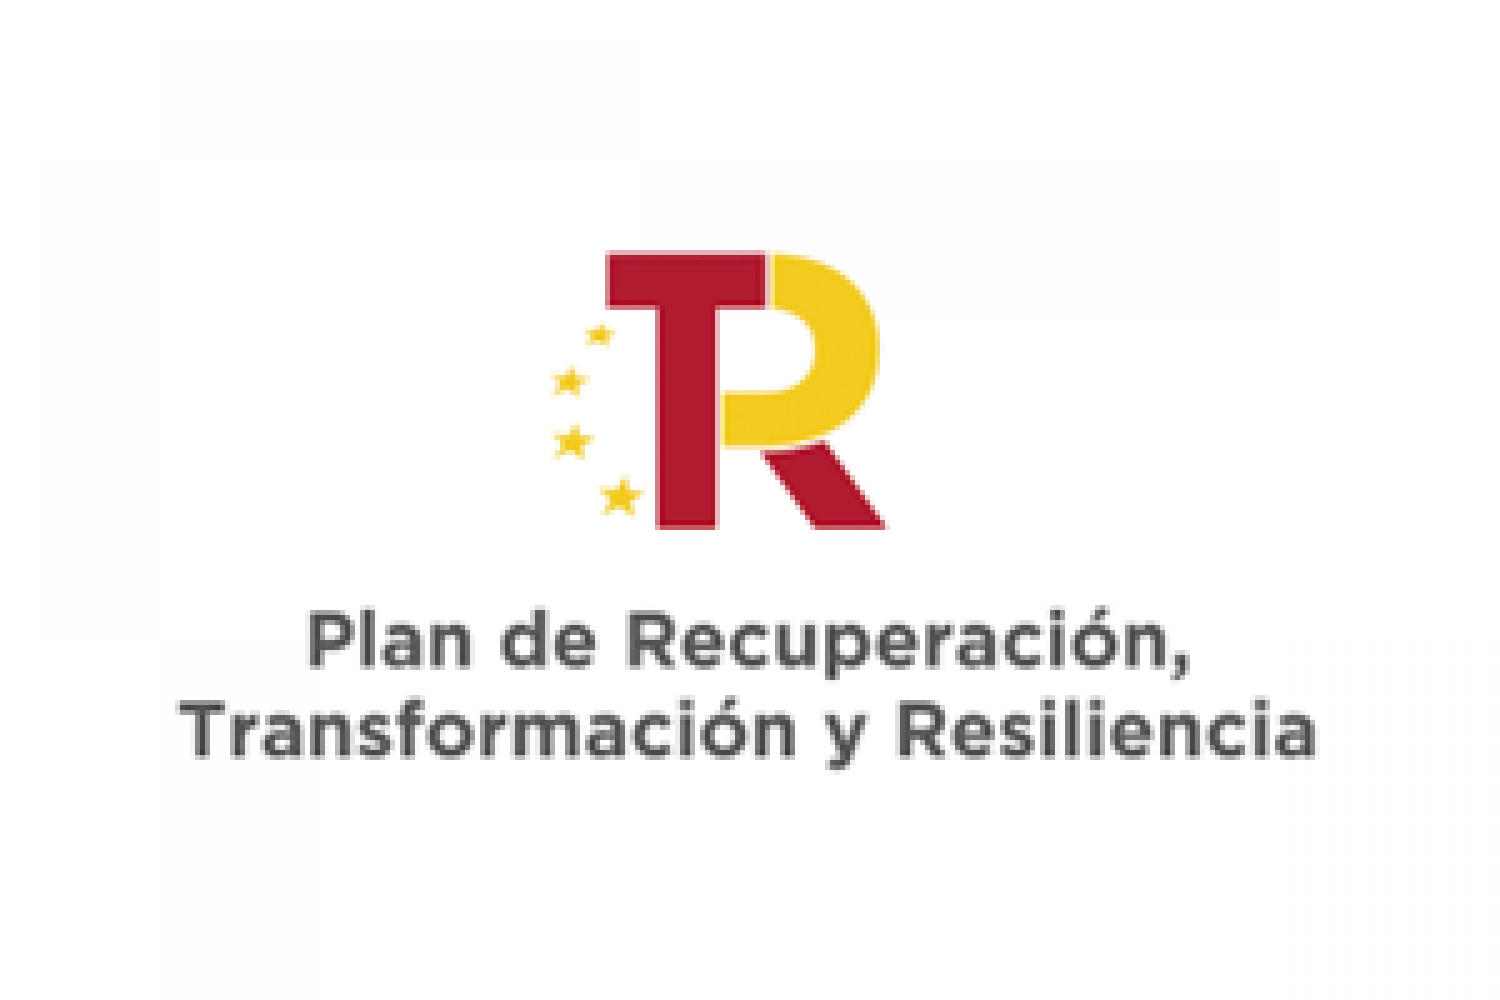 Plan de recuperación, Transformación y Resiliencia